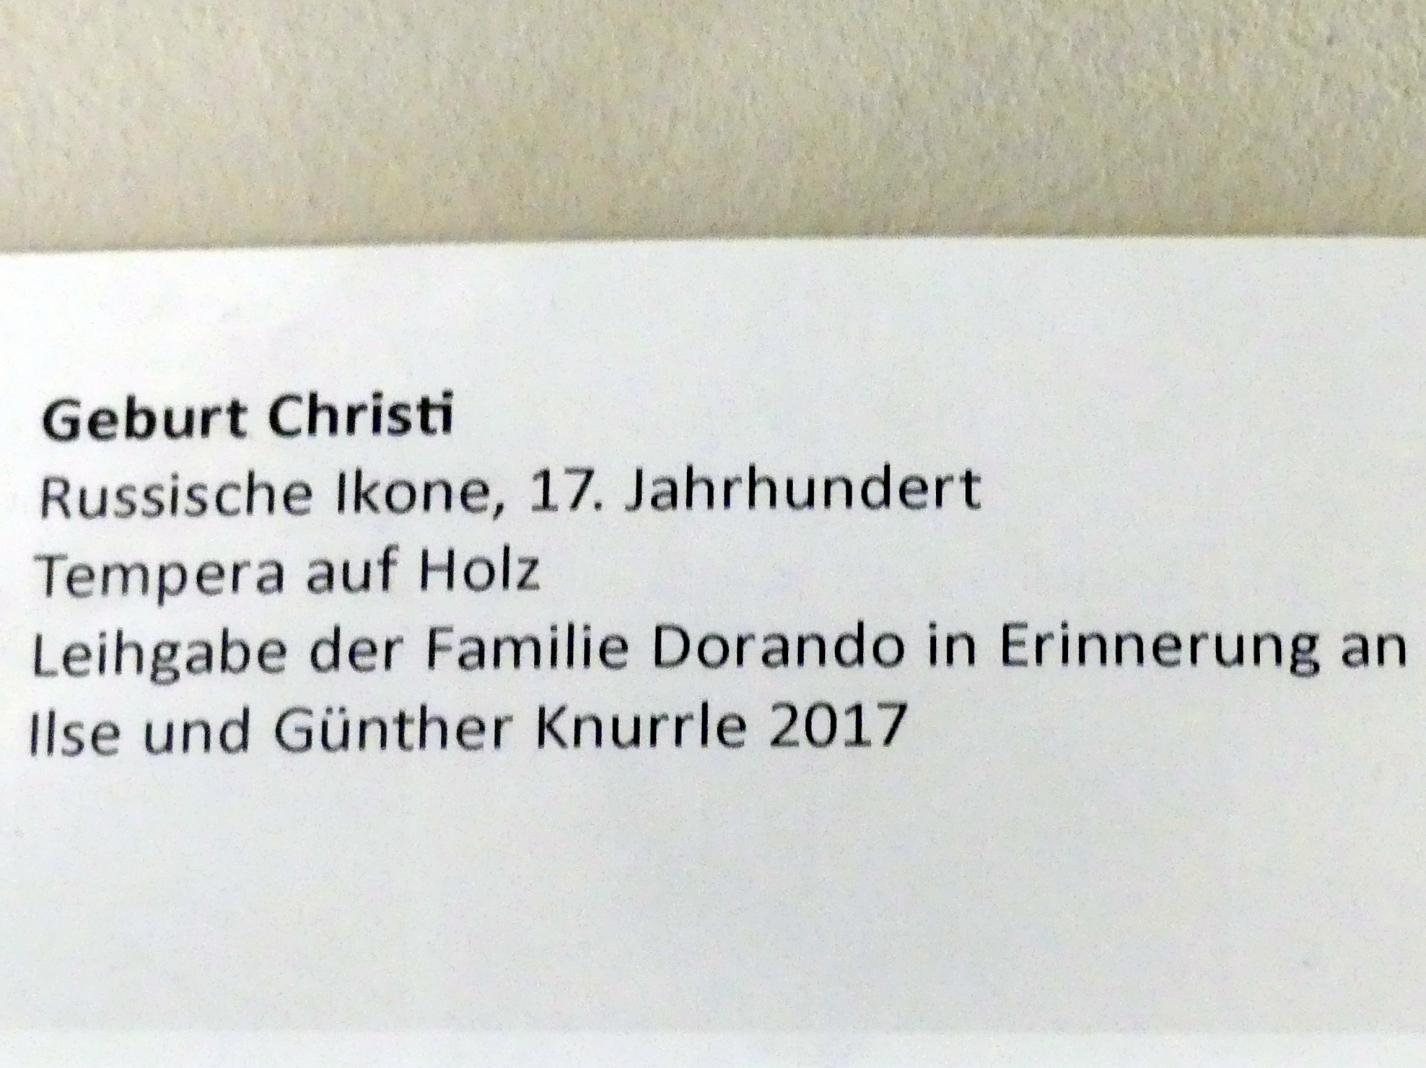 Geburt Christi, Frankfurt am Main, Ikonen-Museum, Erdgeschoss, 17. Jhd., Bild 2/2